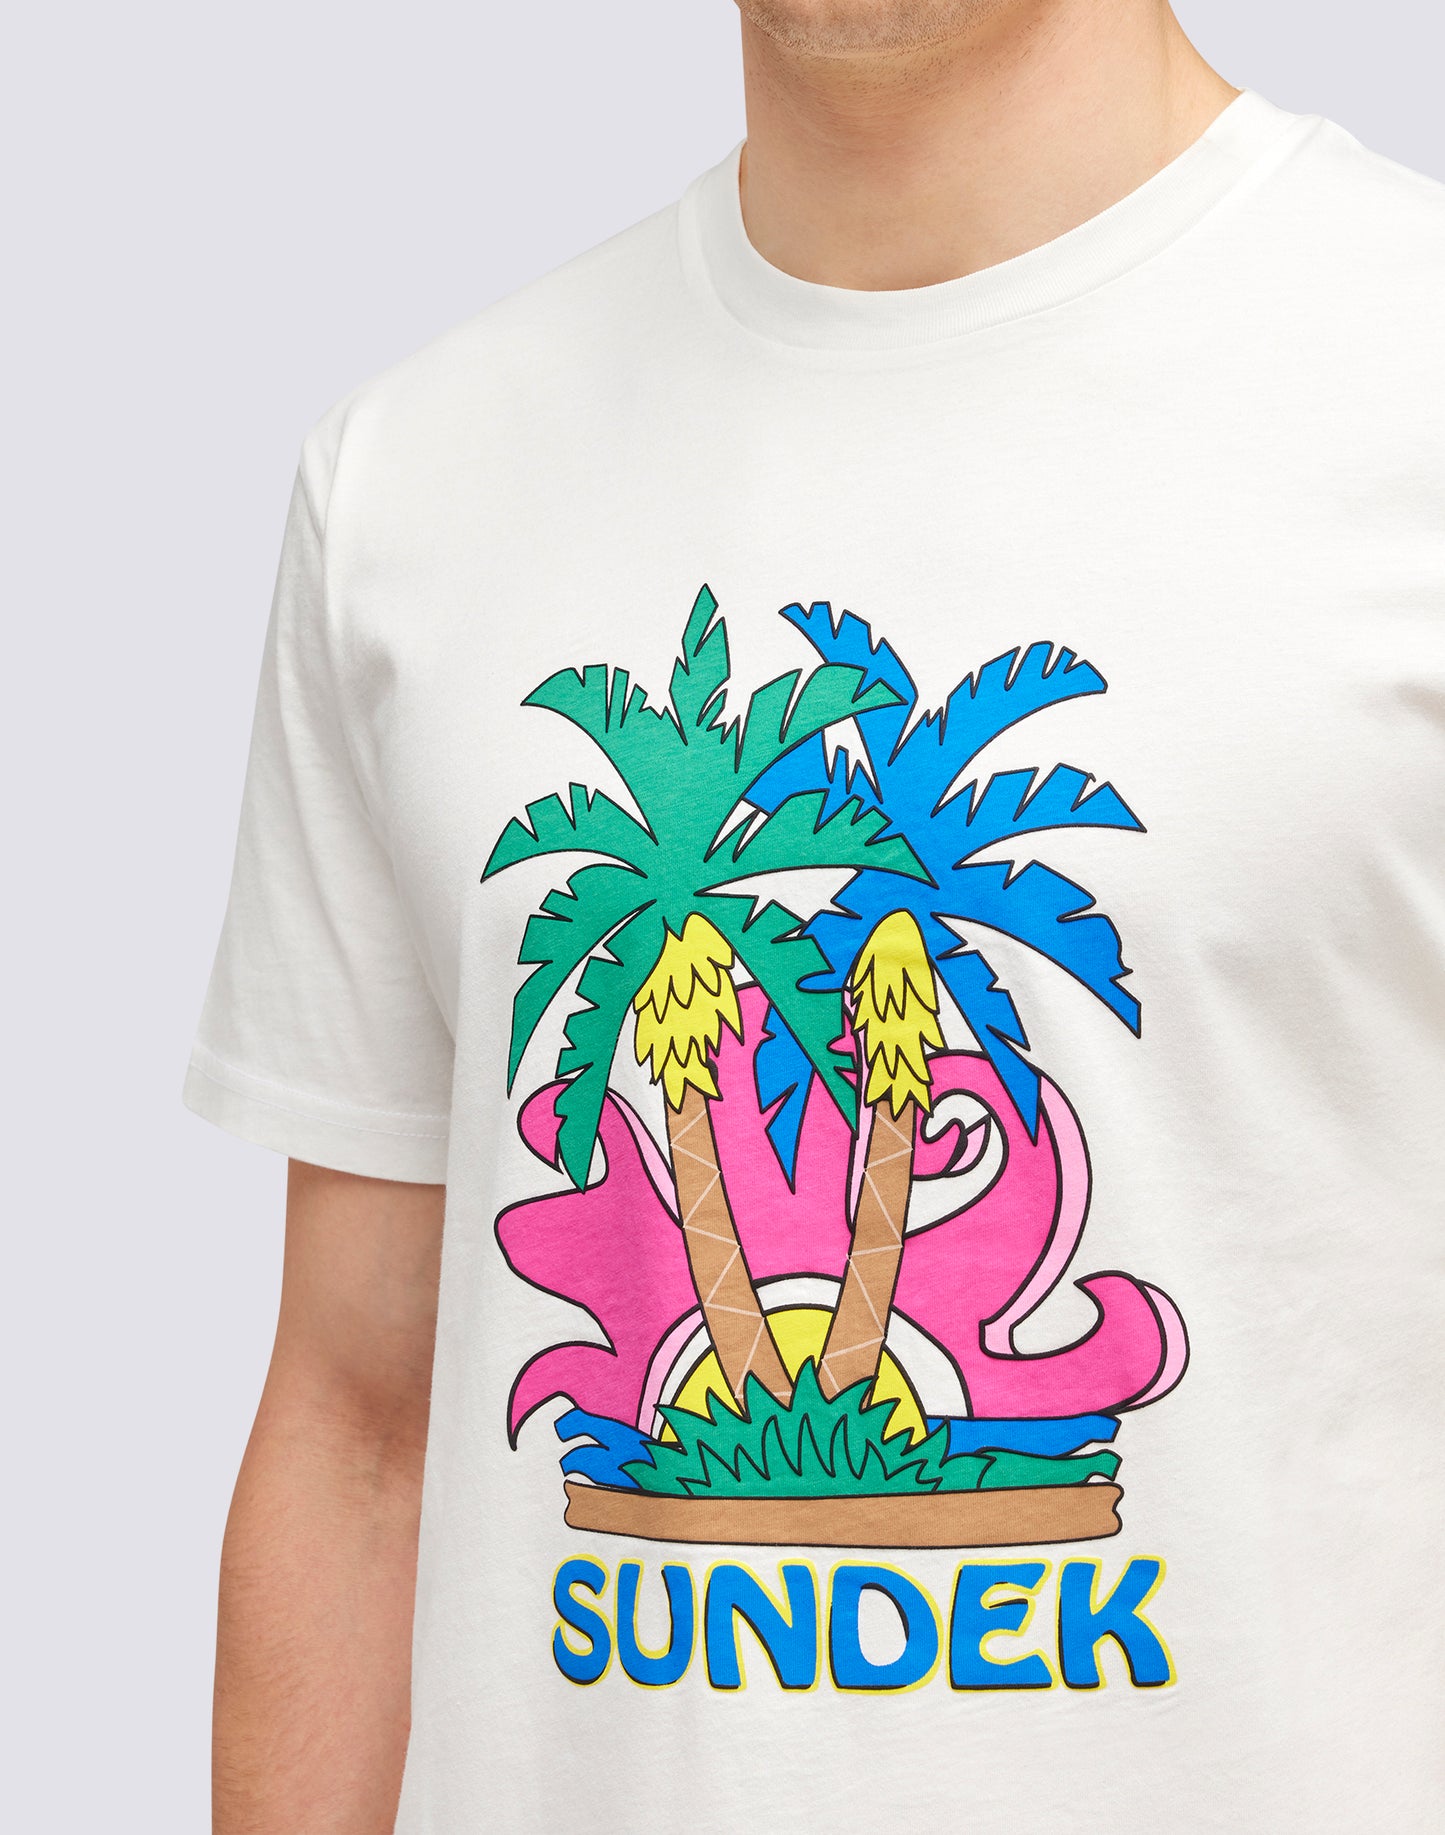 SUNDEK ISLAND PRINTED T-SHIRT